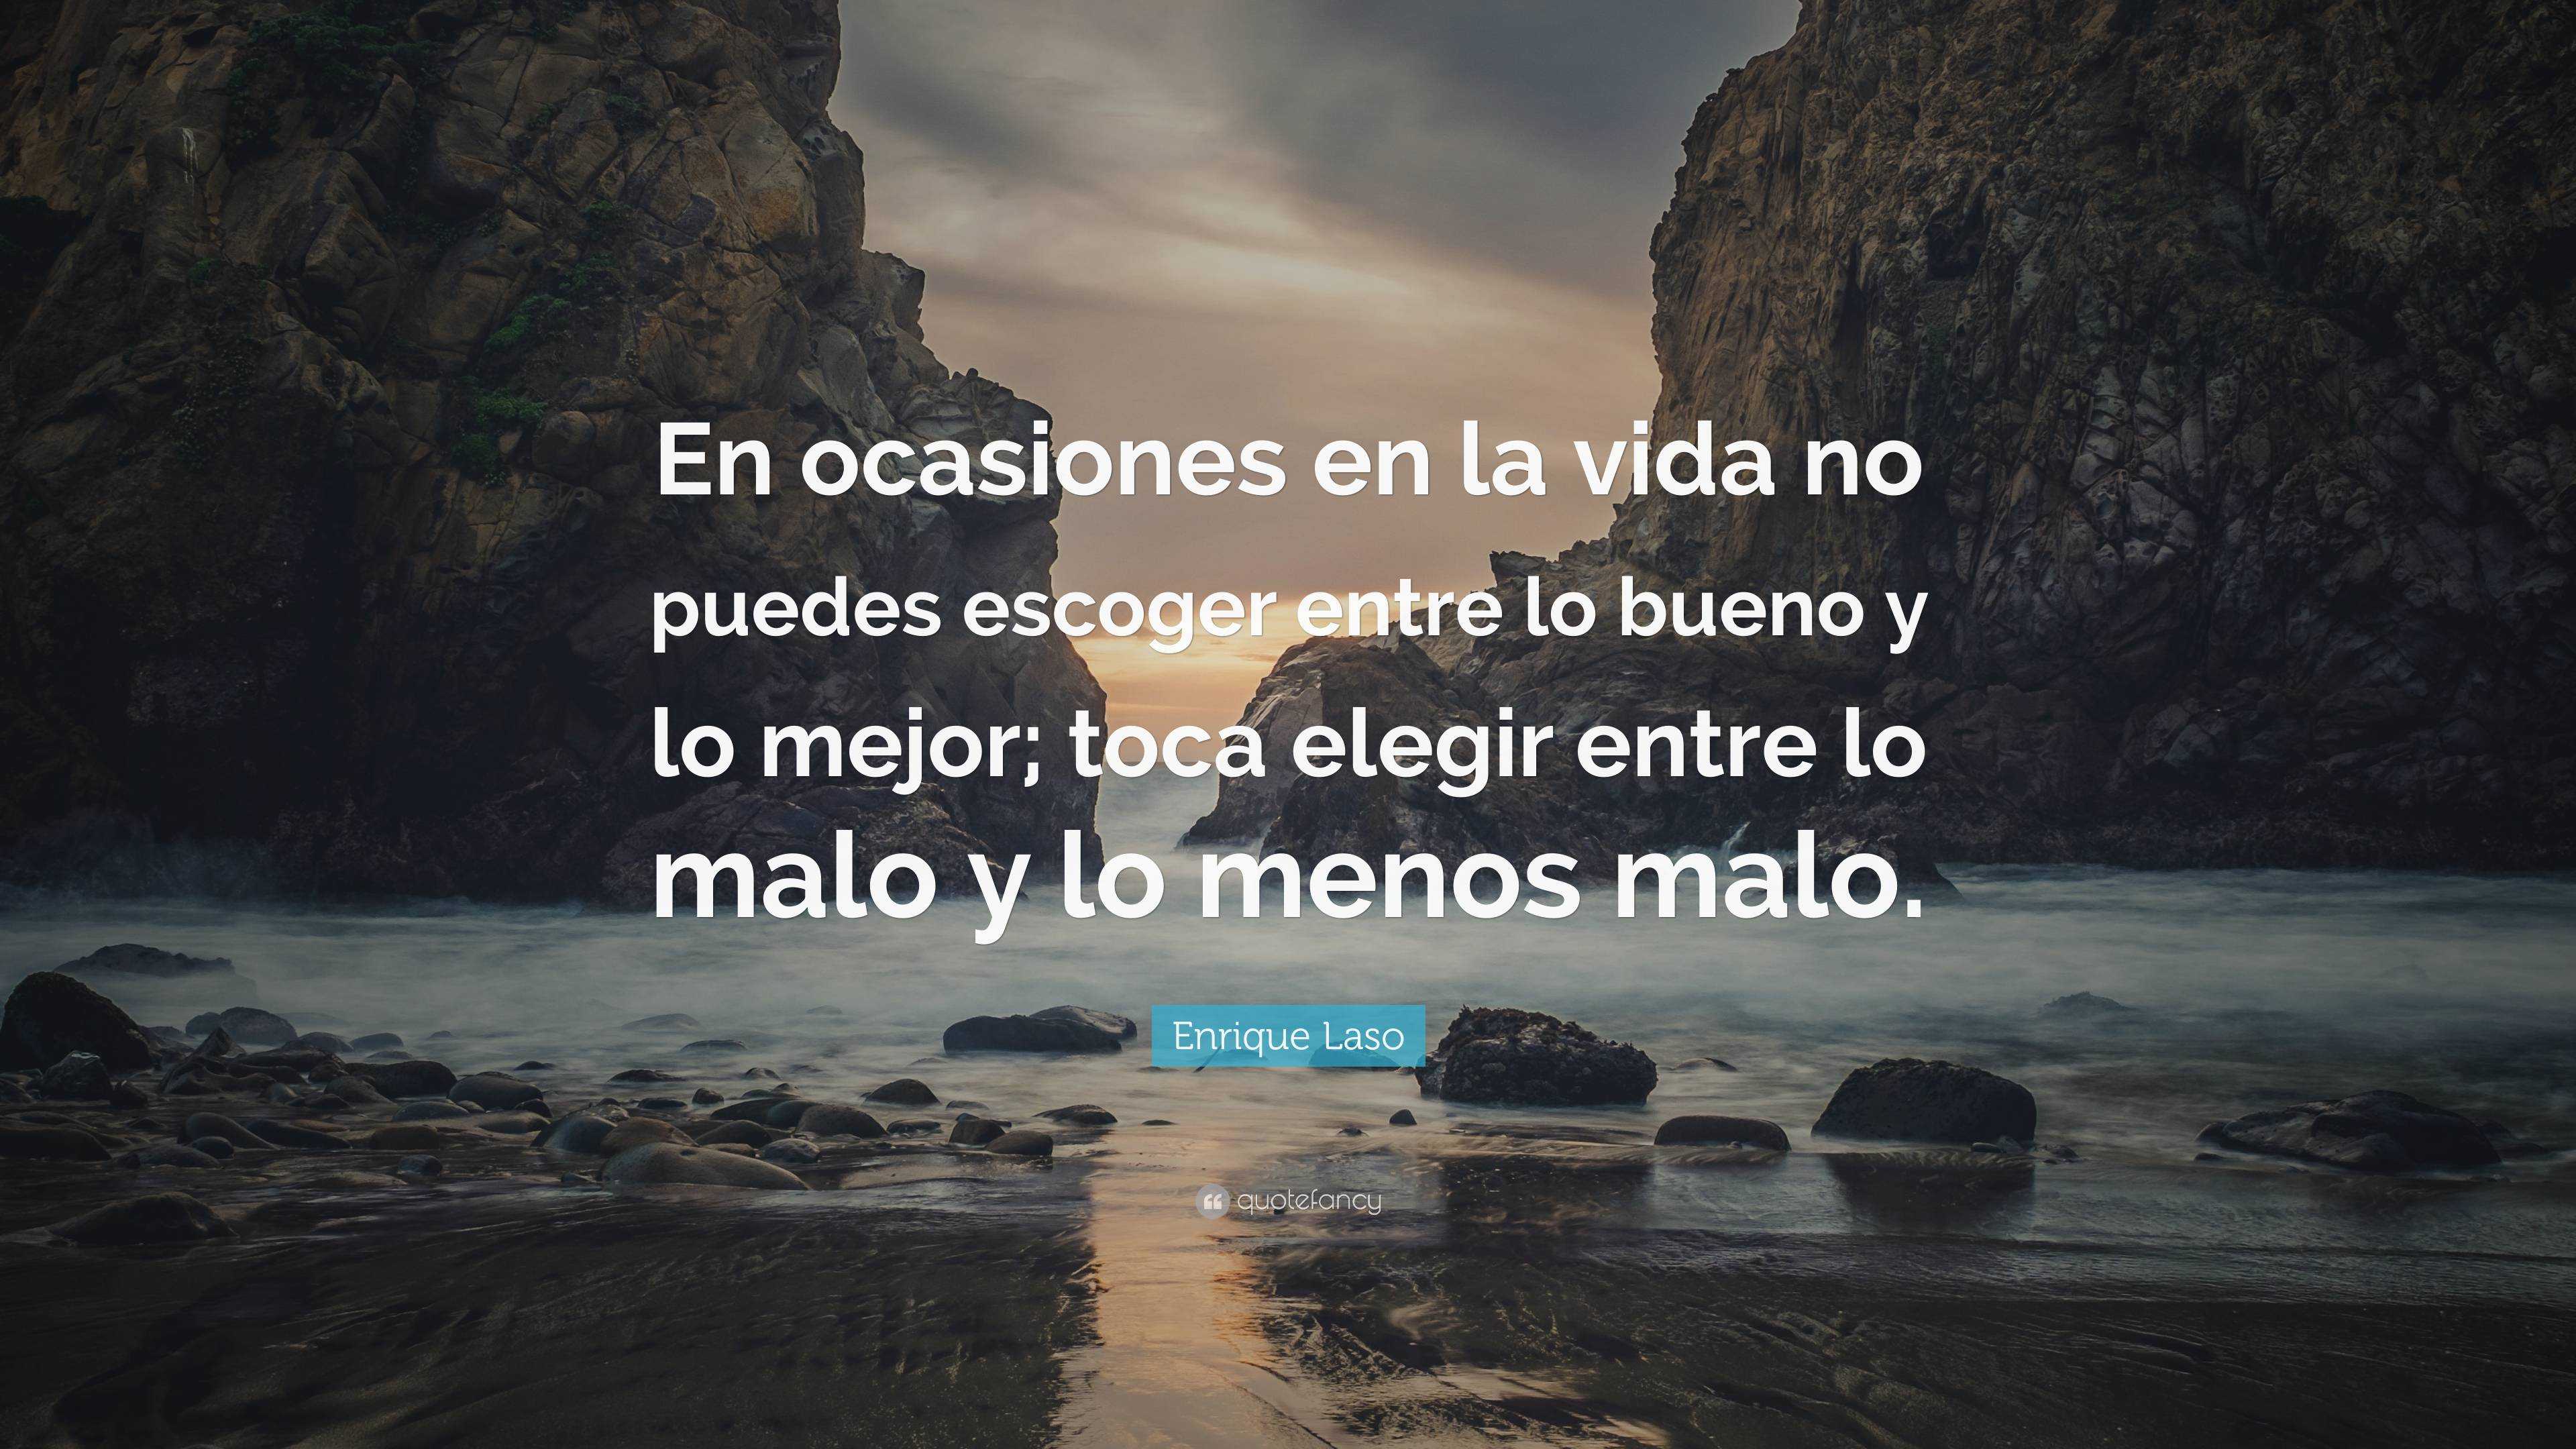 Enrique Laso Quote: “En ocasiones en la vida no puedes escoger entre lo ...